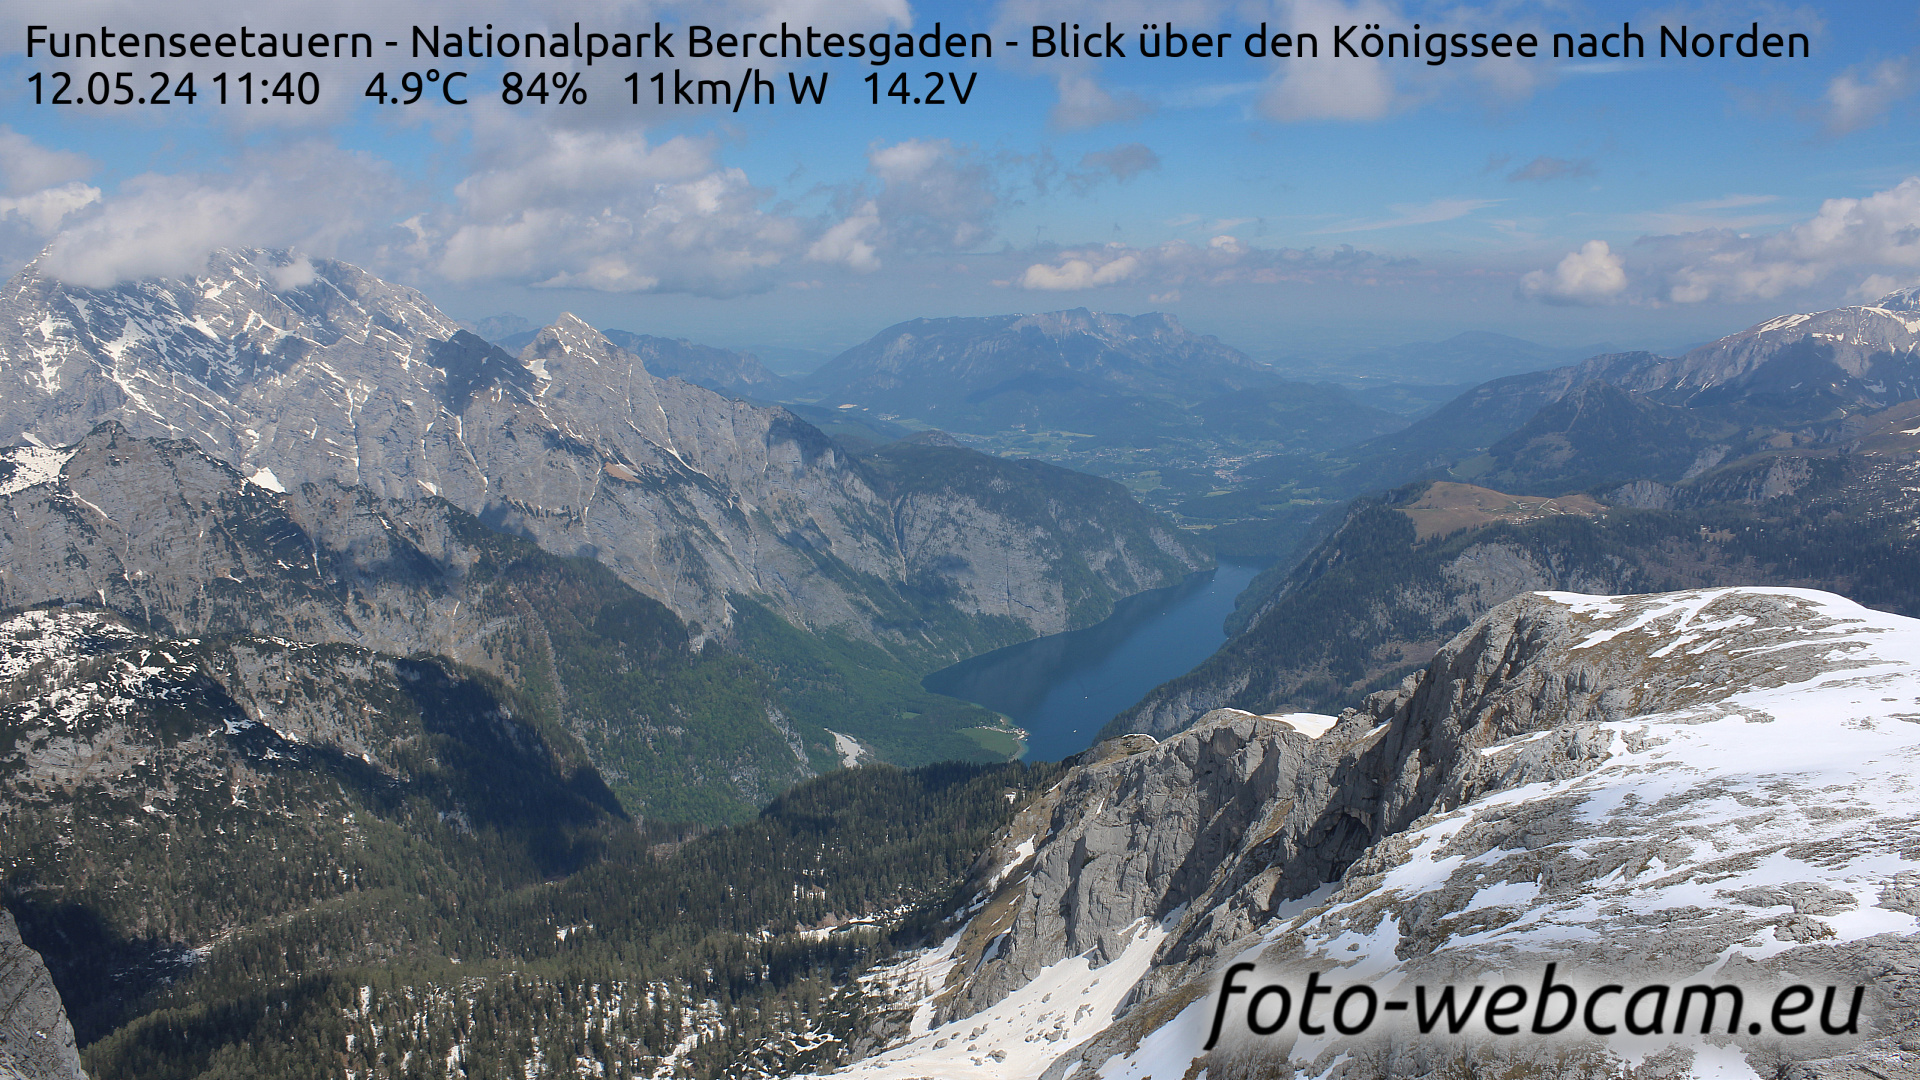 Berchtesgaden Thu. 11:48